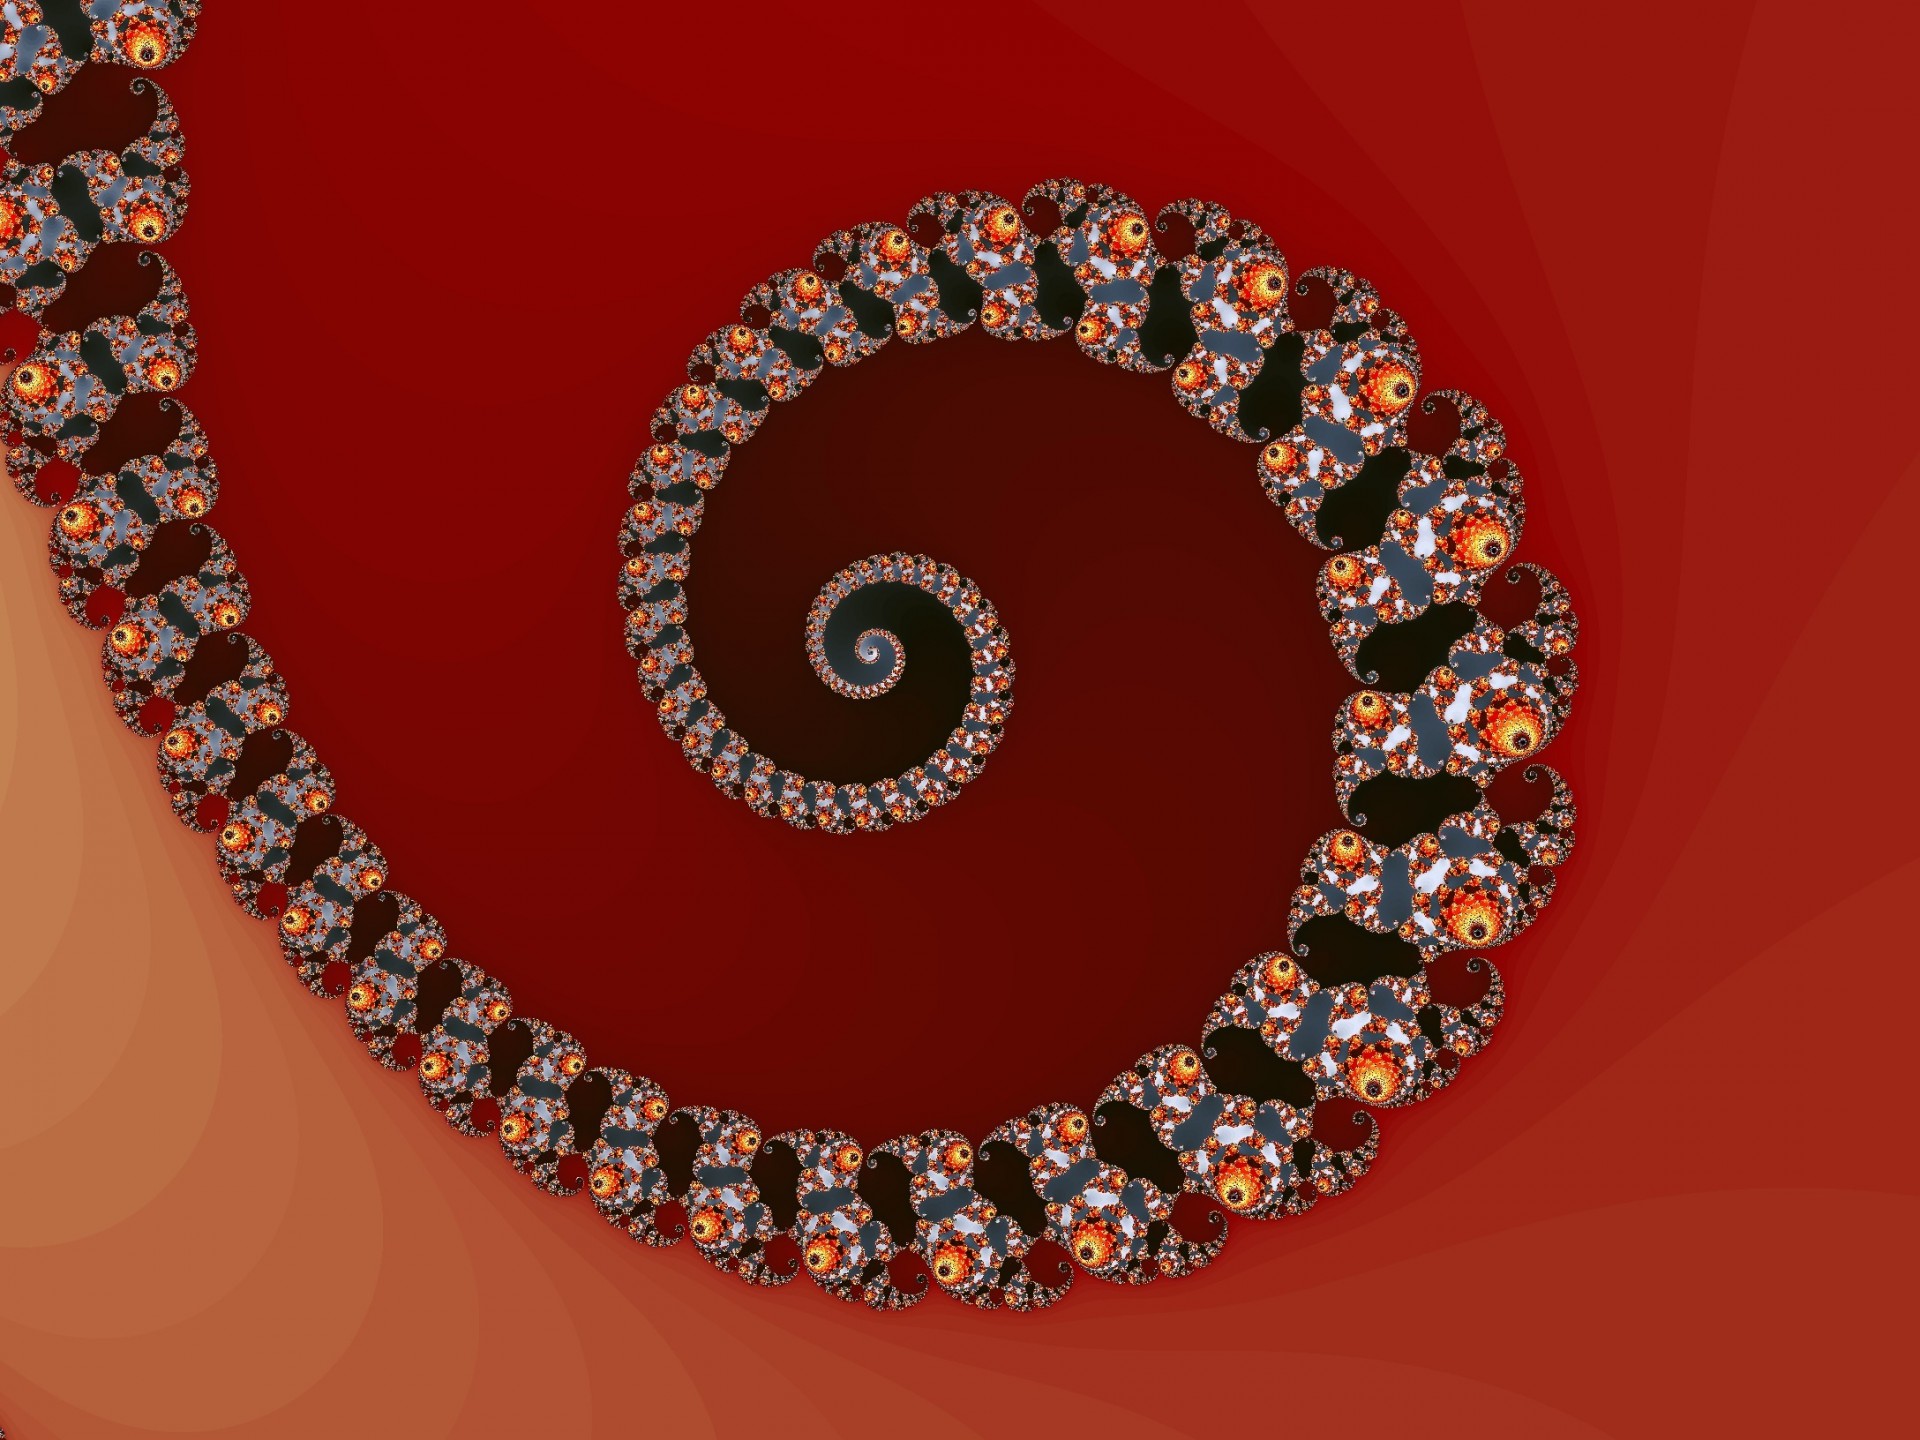 Digital fractal spiral